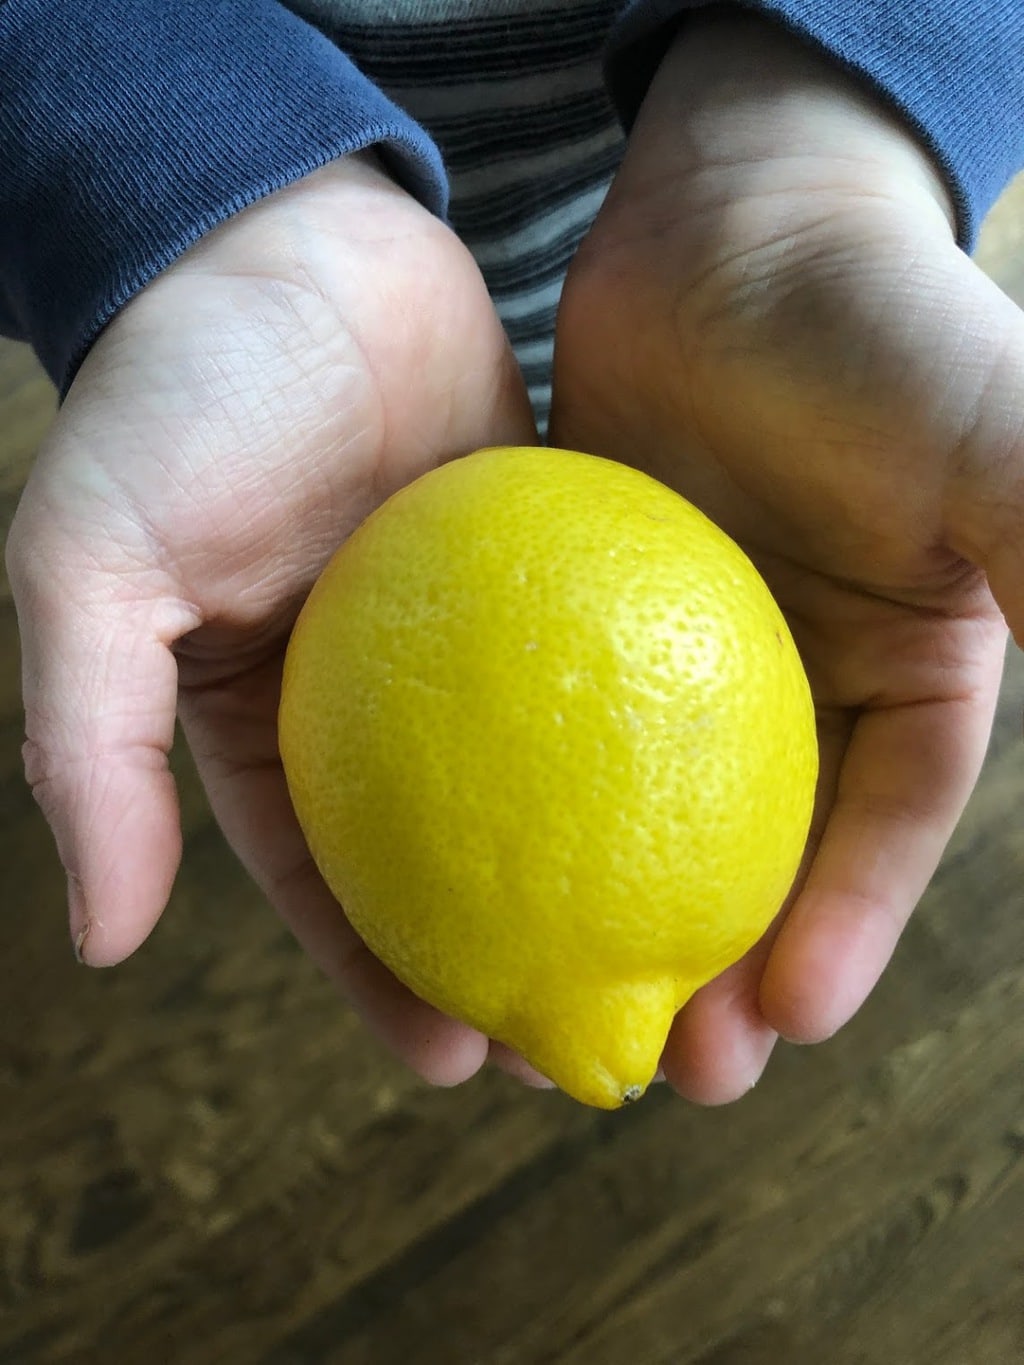 Child holding whole lemon